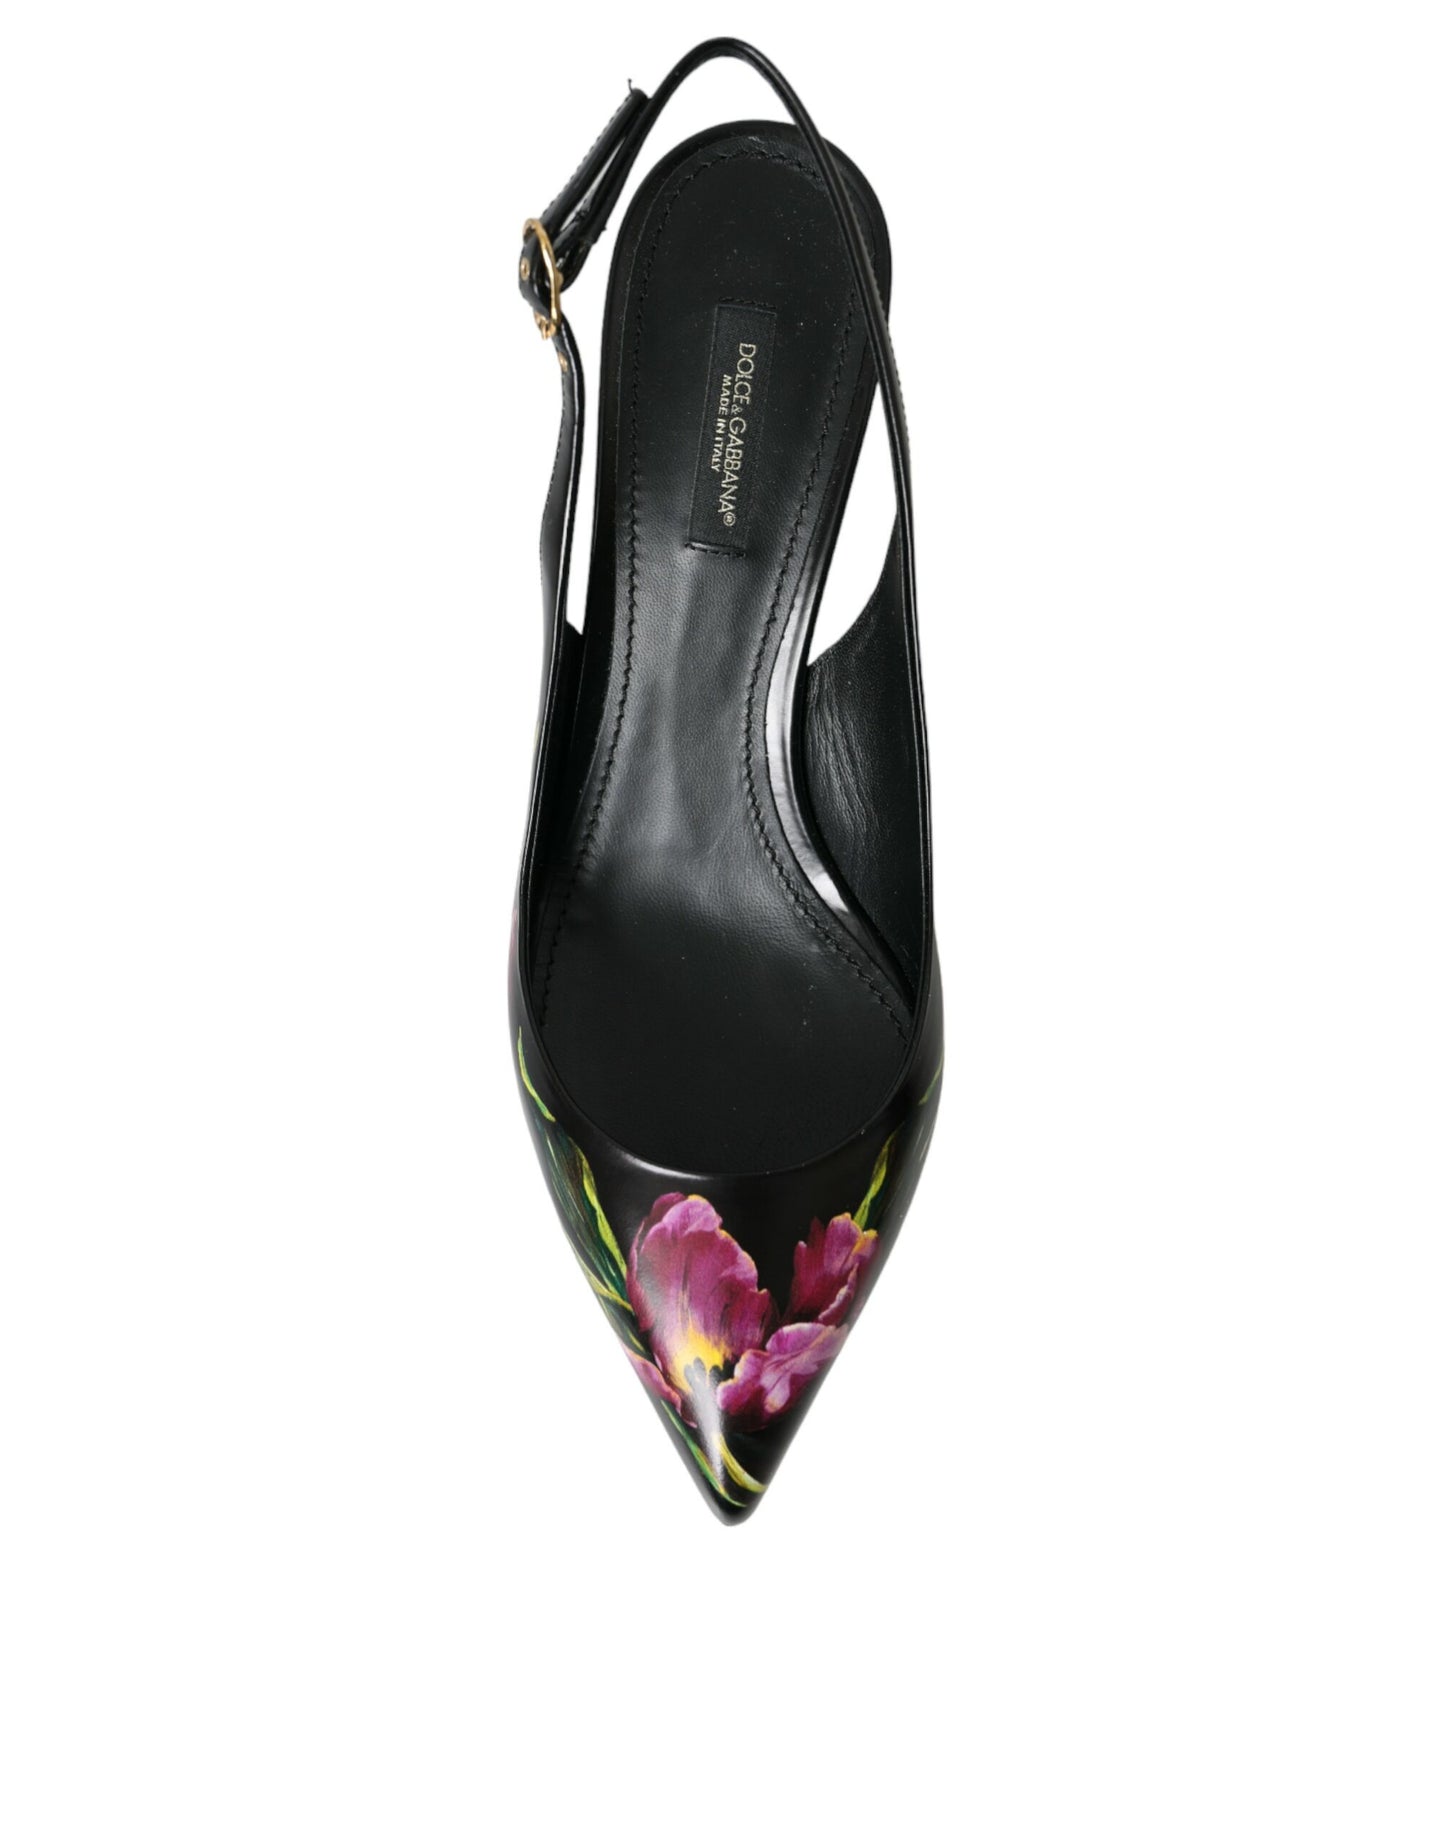 Dolce & Gabbana Black Floral Leather Heels Slingback Shoes